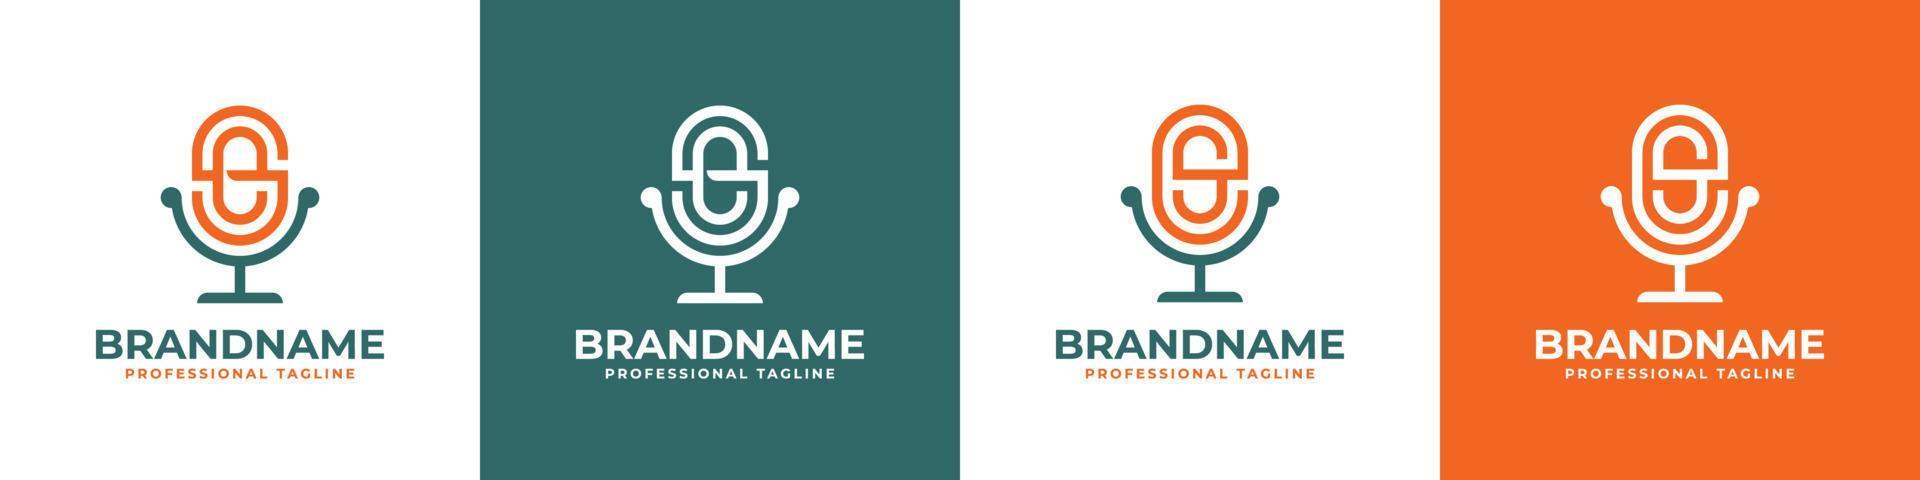 logotipo de podcast de letra es o se, adecuado para cualquier negocio relacionado con el micrófono con las iniciales es o se. vector